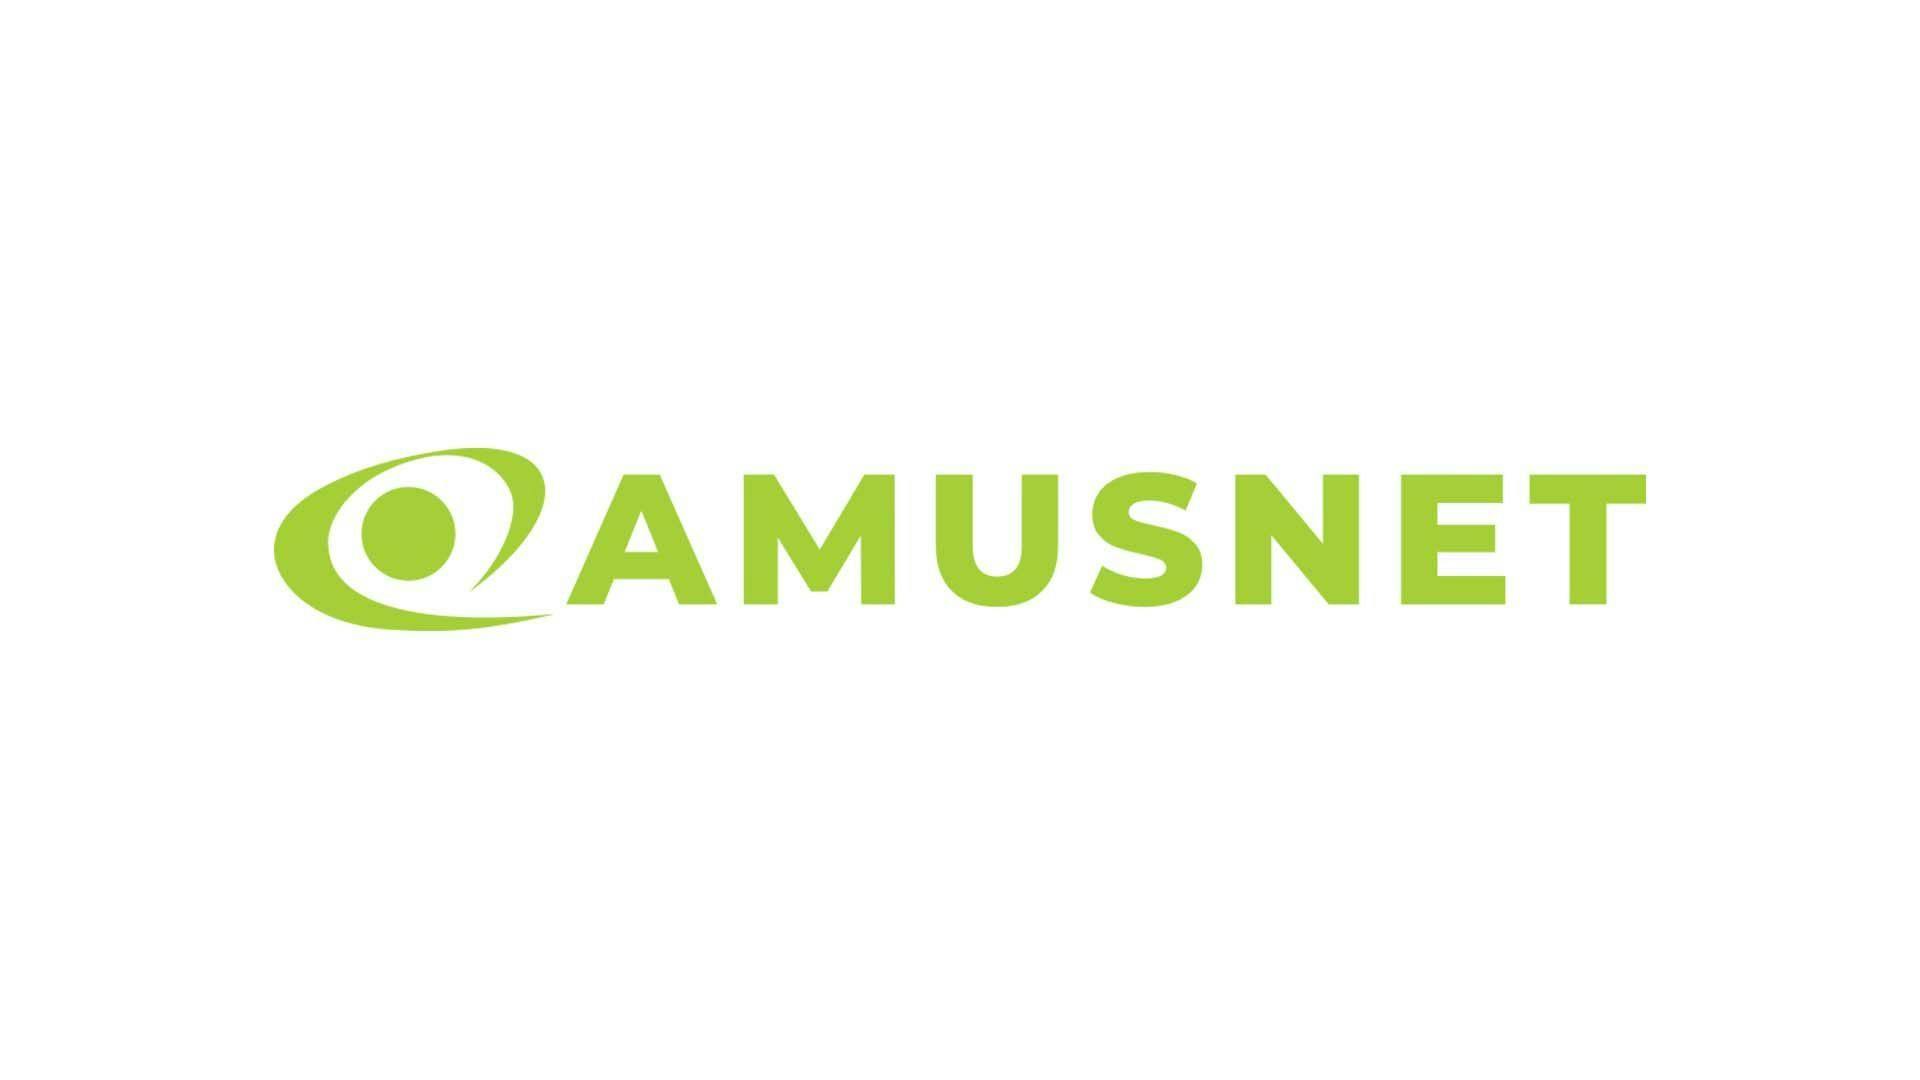 Amusnet EGT Interactive Provider Logo